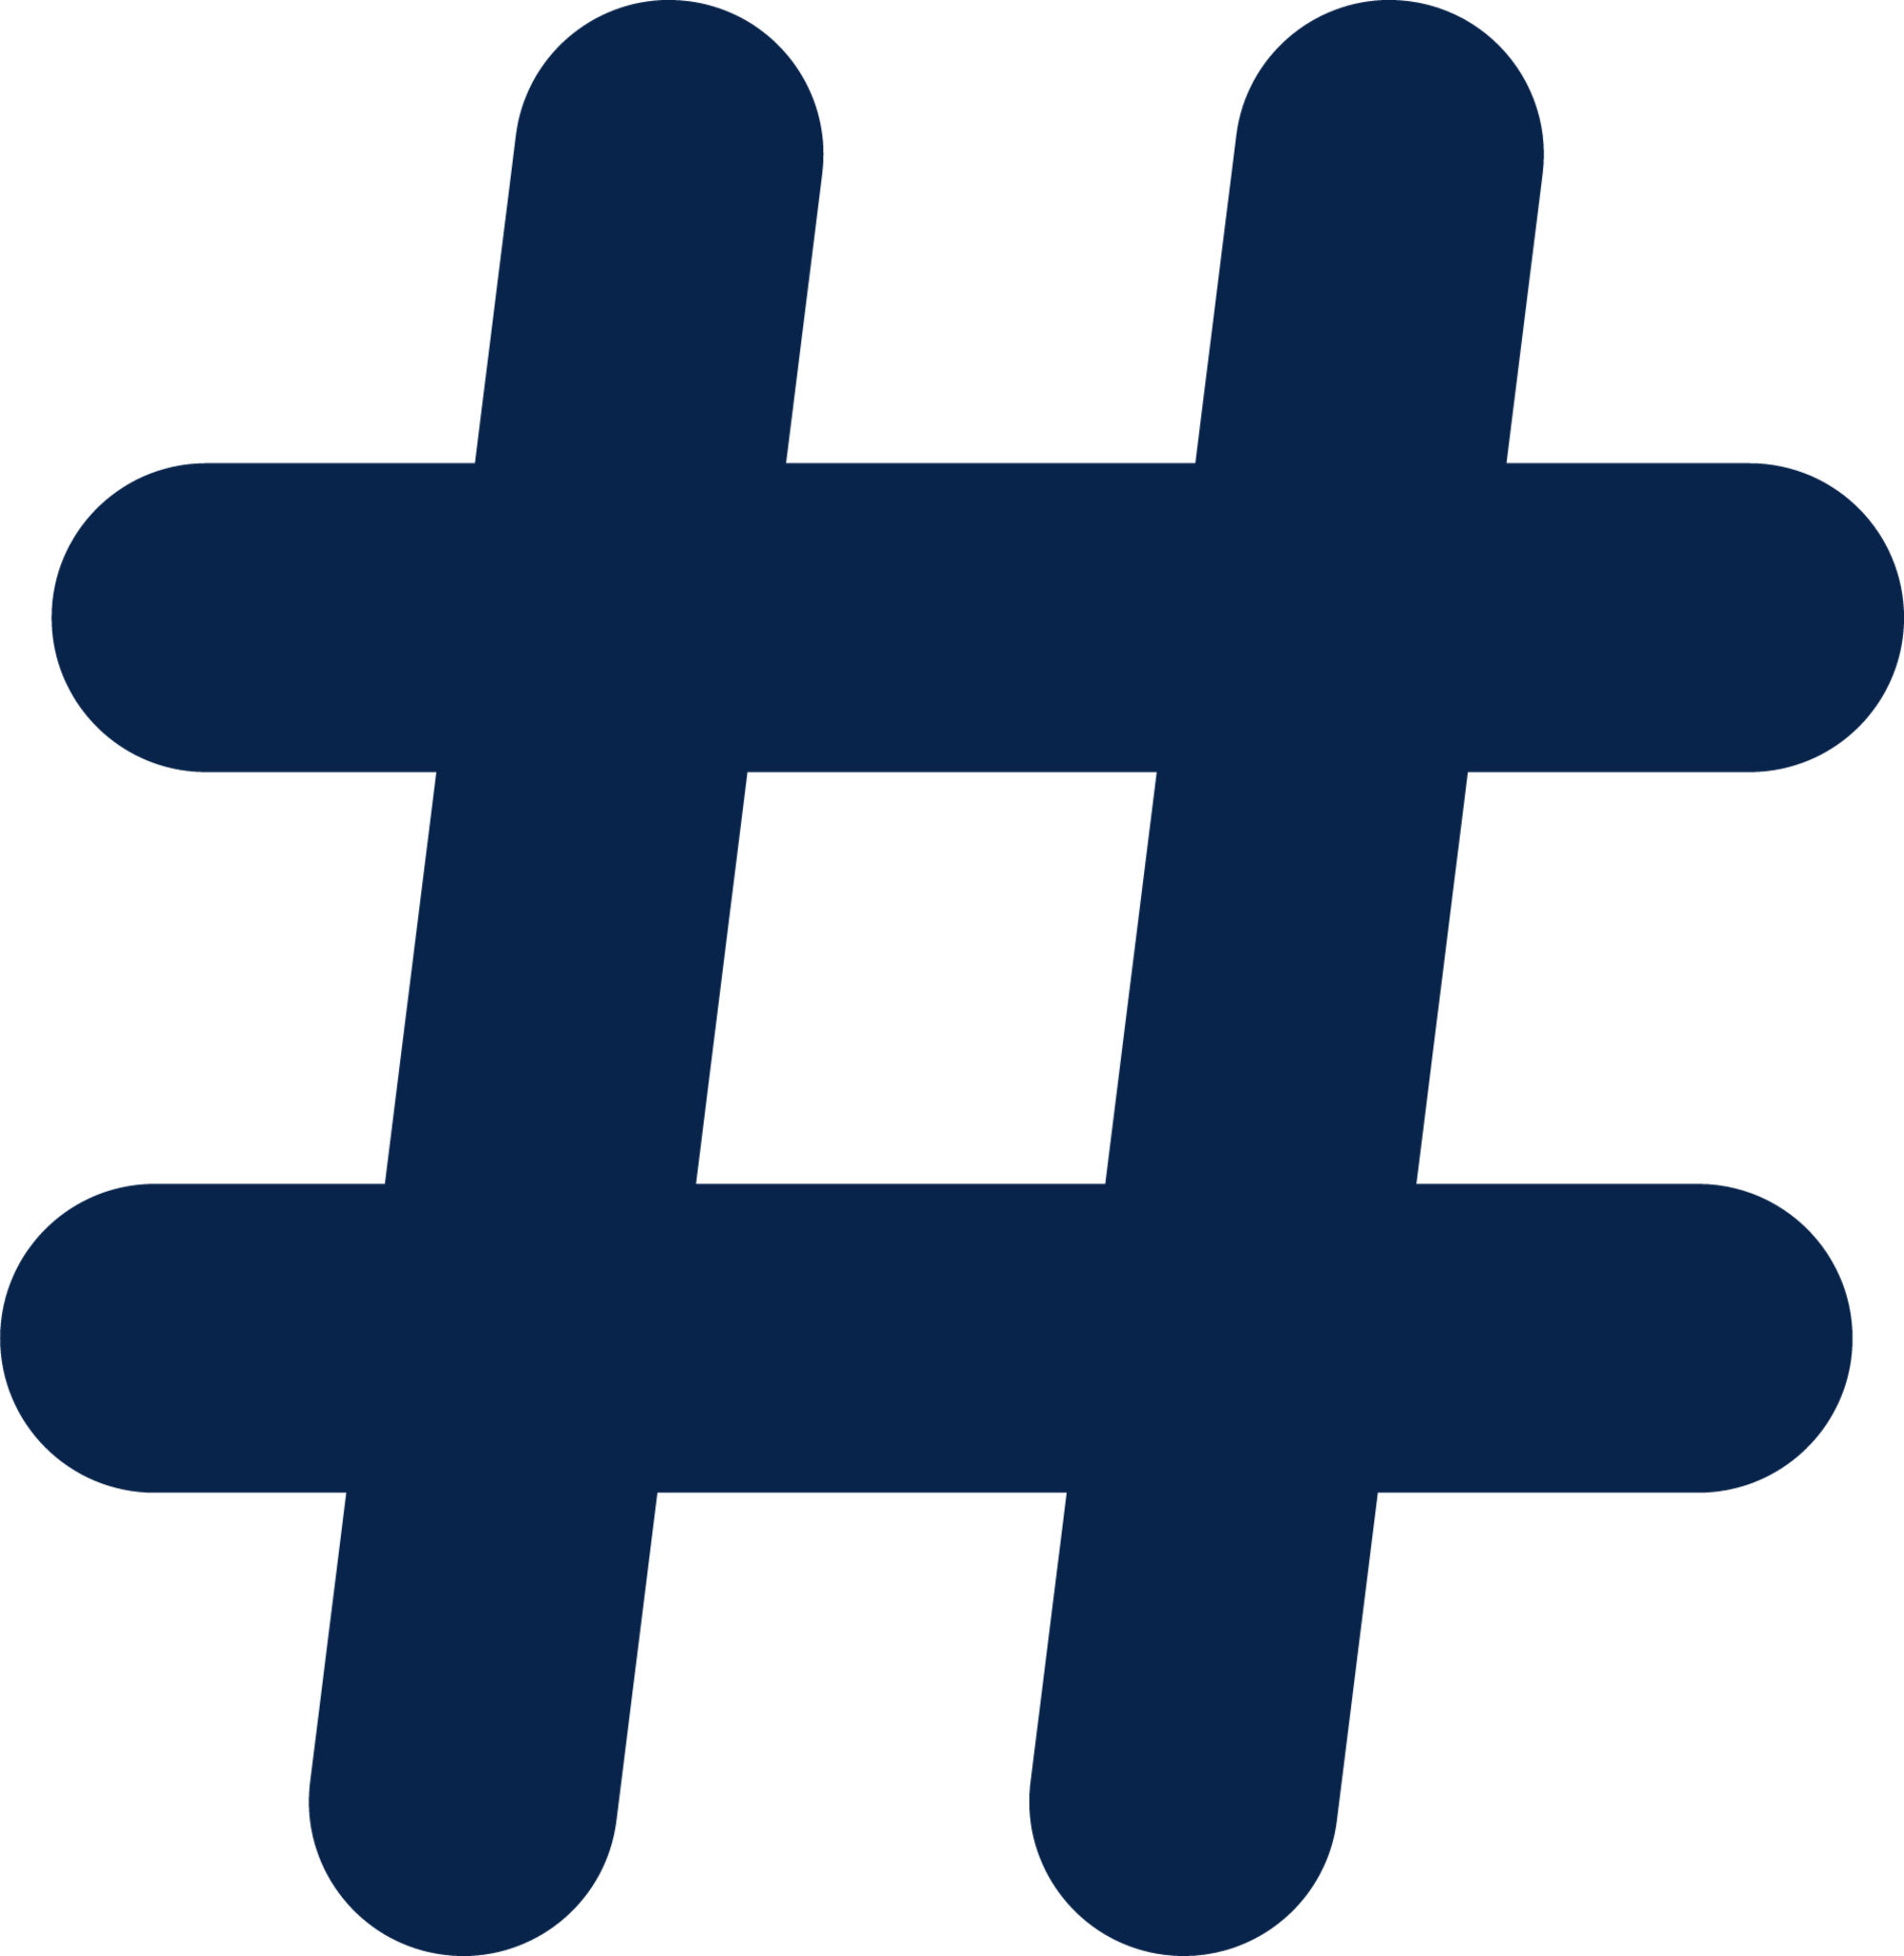 hashtag fill editor icon